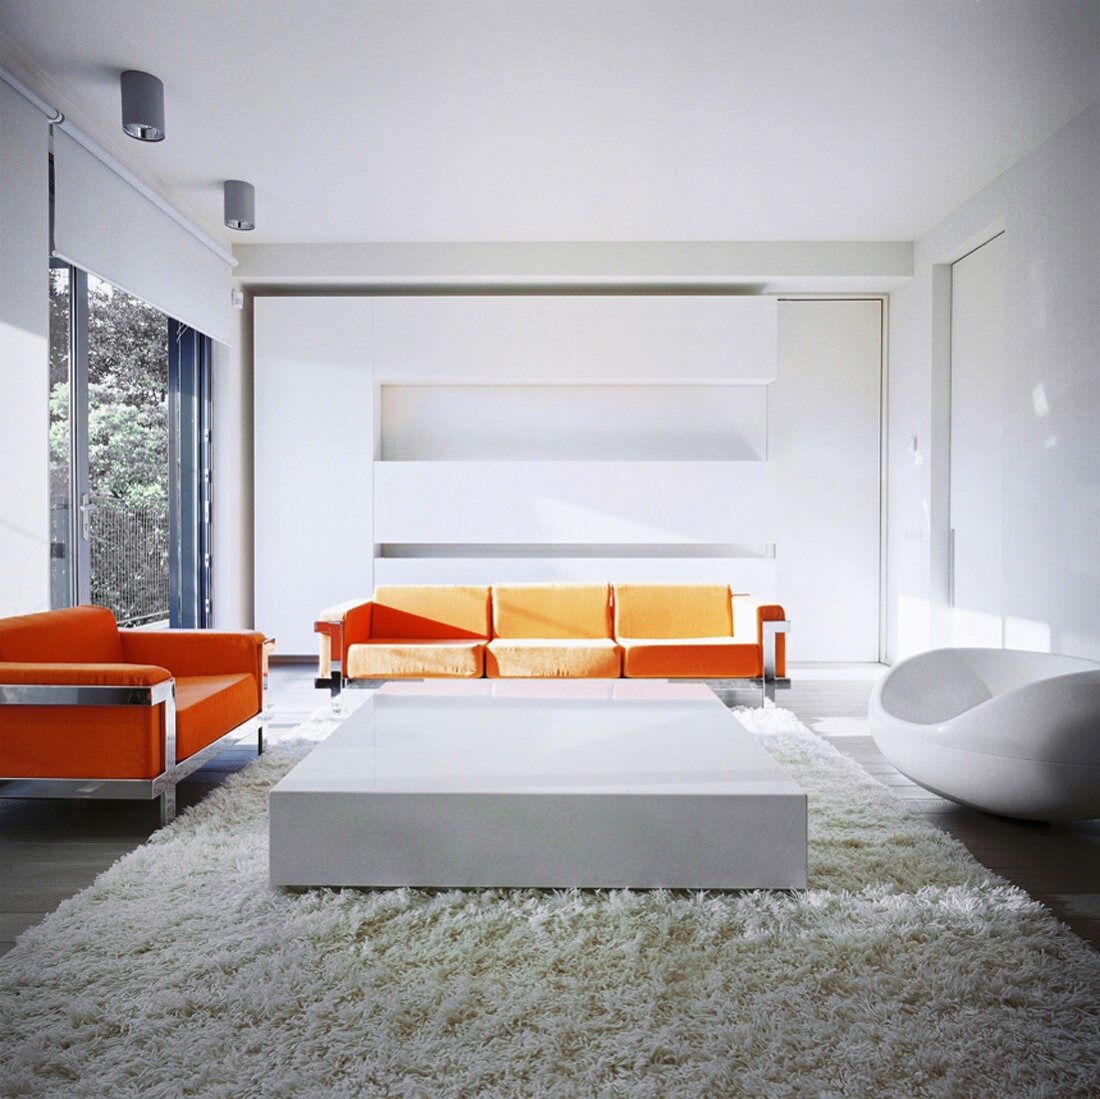 Zeitgenössische Wohnraum-Architektur mit orangefarbenen Designer-Sofas vor grosszügigem Einbauschrank und kubischem Couchtisch